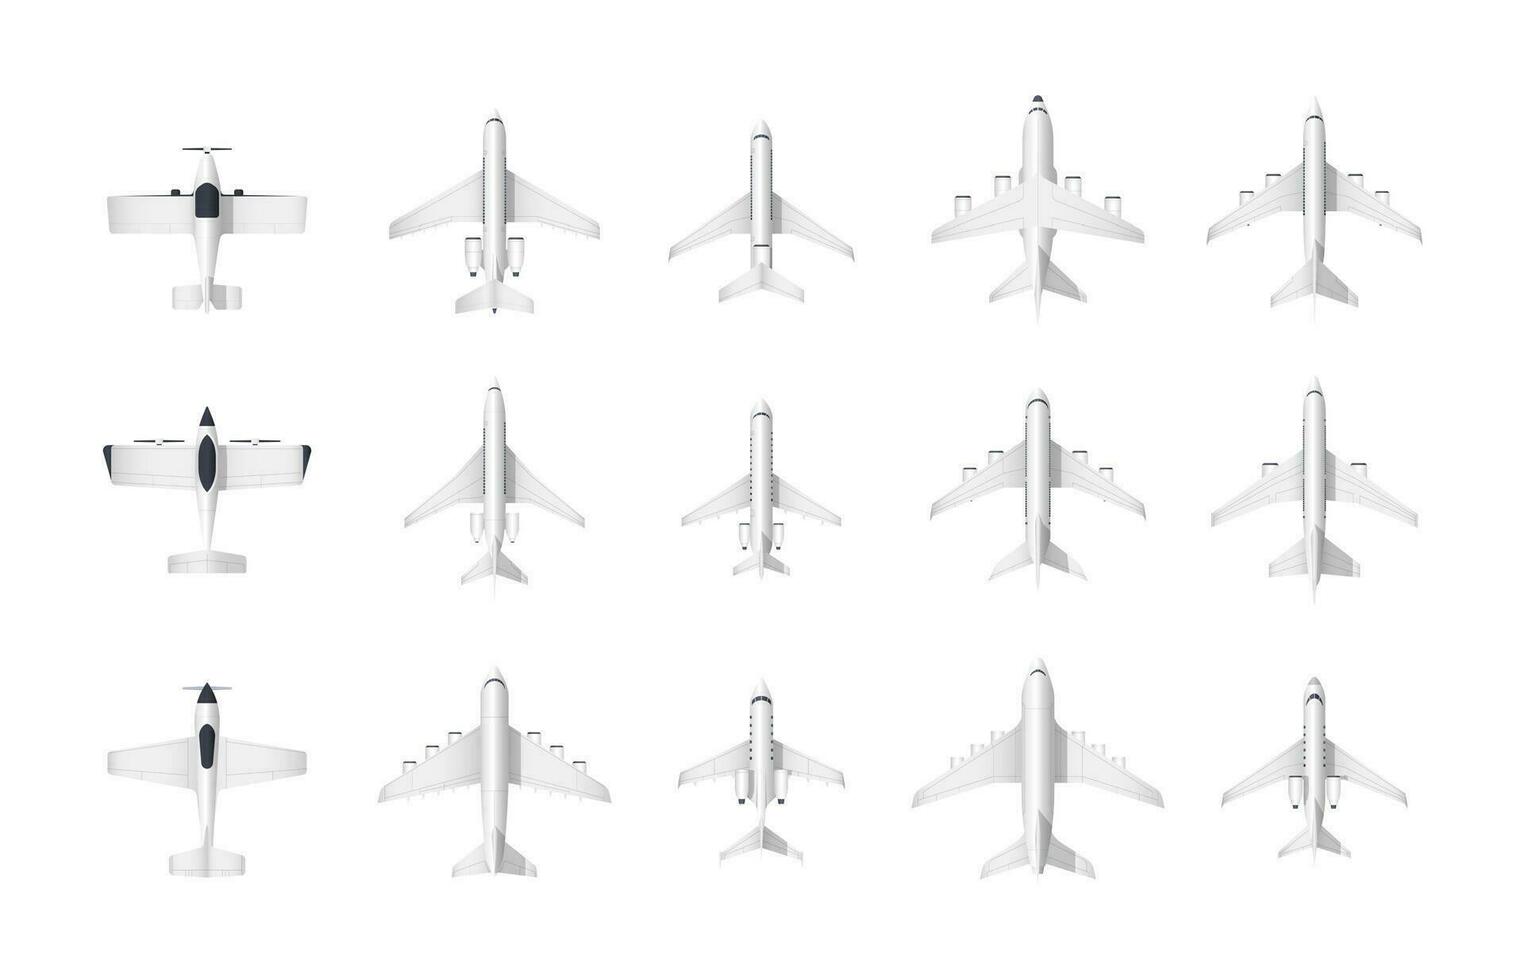 Flugzeug oben Sicht. Karikatur bürgerlich Luftfahrt klein und groß Passagier und Ladung Flugzeug Modelle, Flugzeug Fahrzeug Spielzeug Aussicht von über. Vektor isoliert einstellen